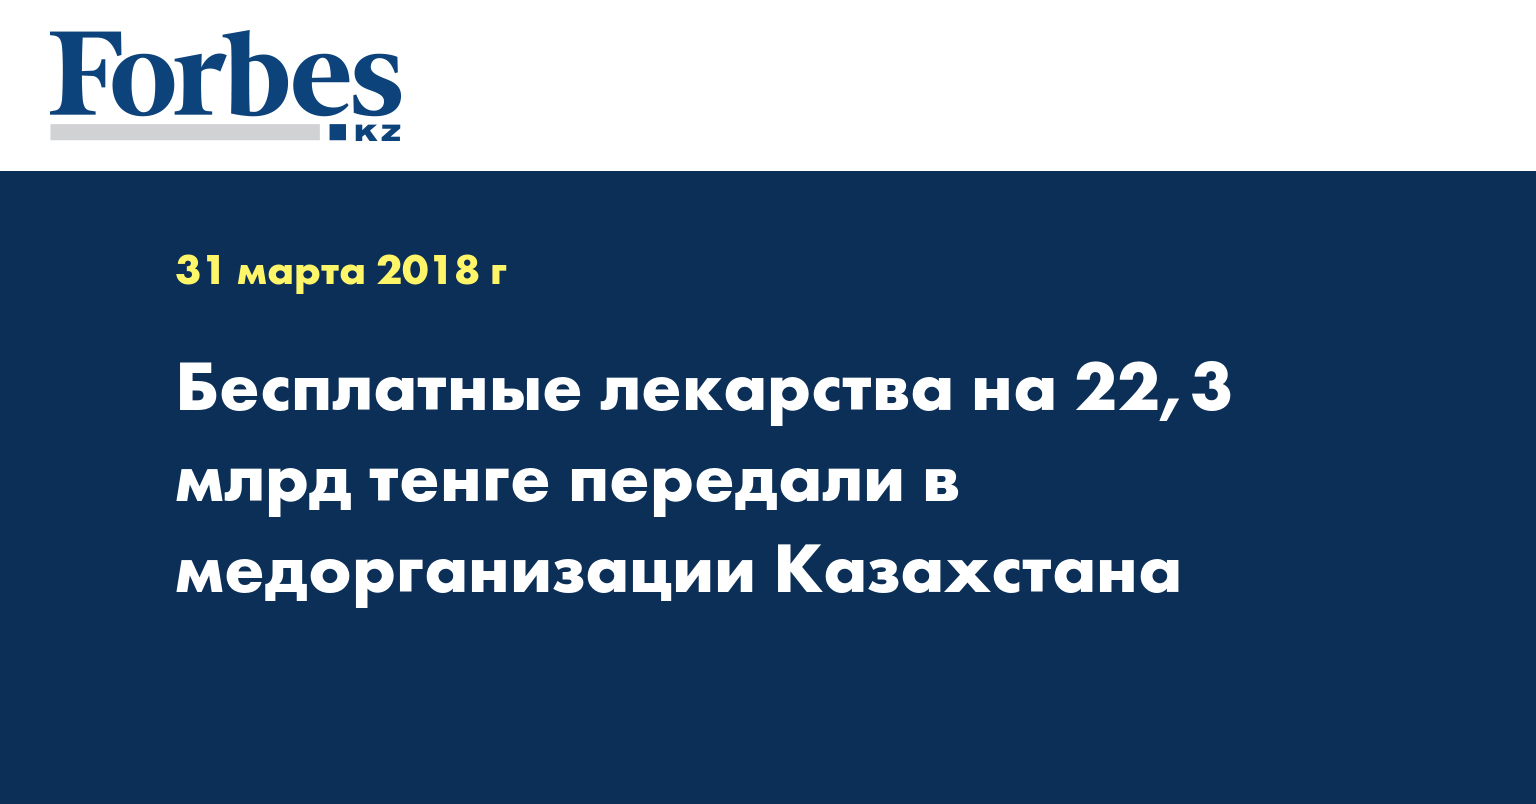 Бесплатные лекарства на 22,3 млрд тенге передали в медорганизации Казахстана